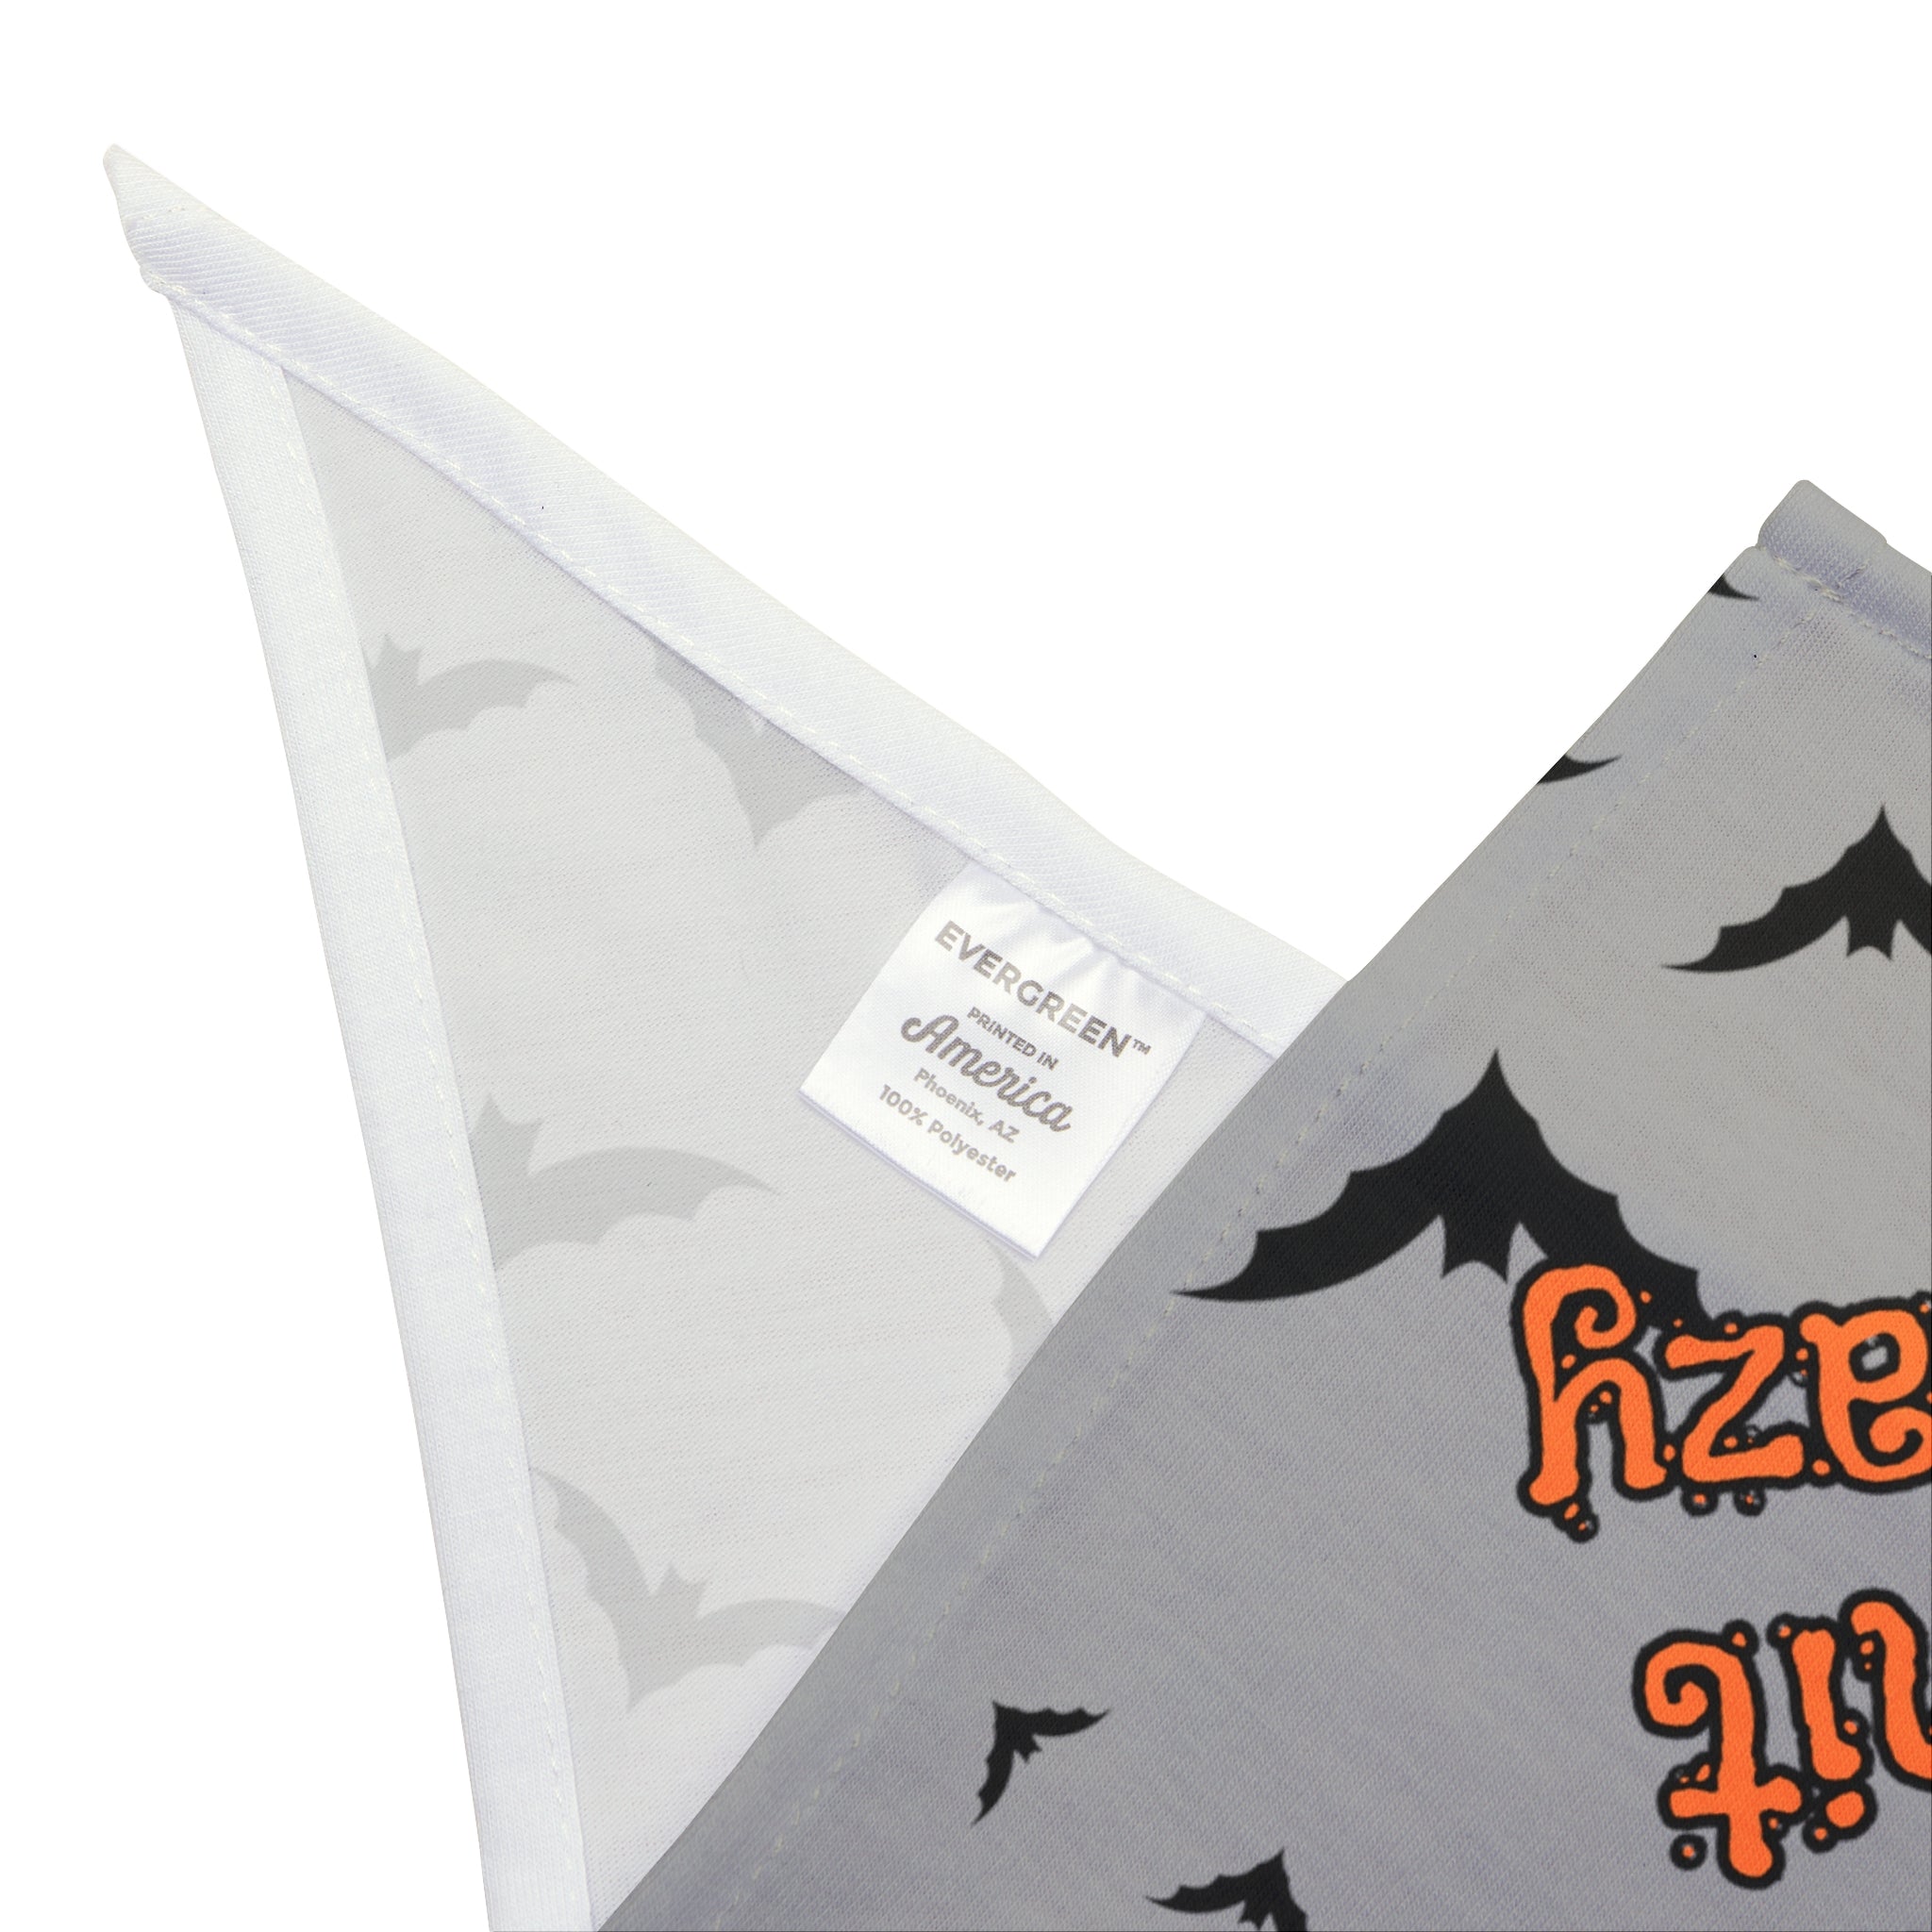 Whimsical 'Bat Shit Crazy' Dog Bandana with Flying Bats Design